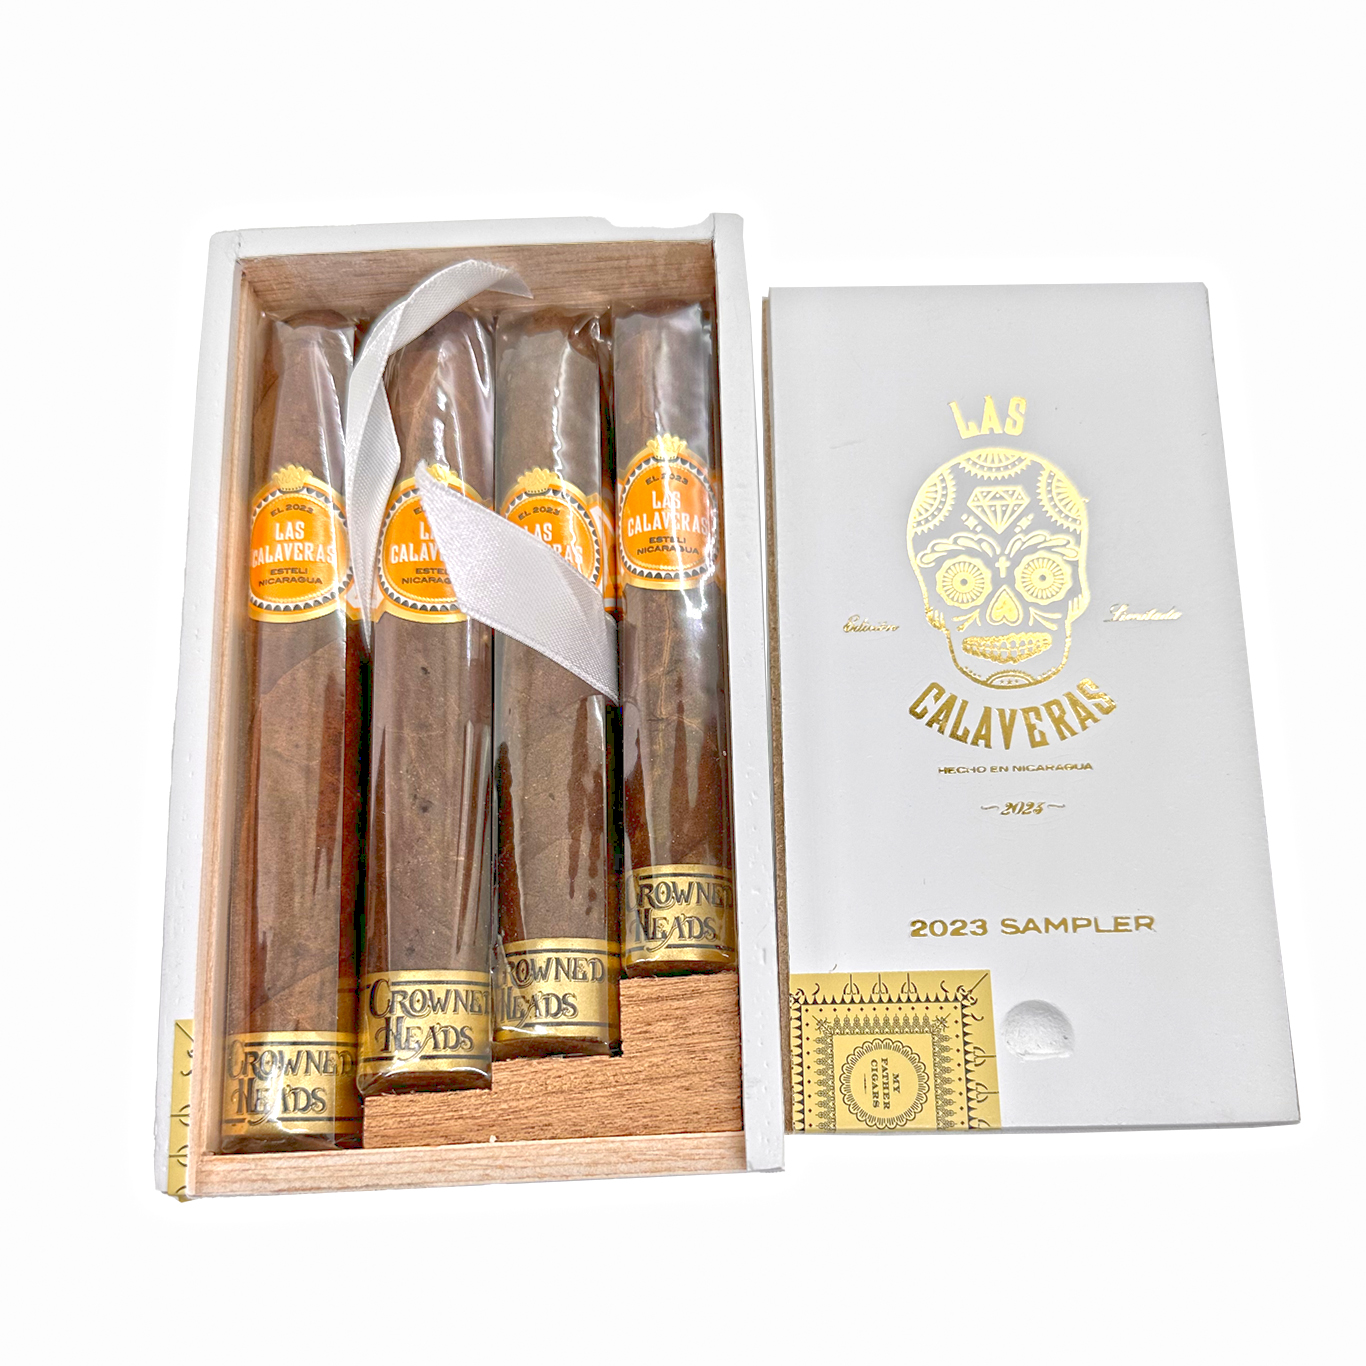 An image of the Las Calaveras Edición Limitada 2023 cigar box, available for purchase at select retailers.